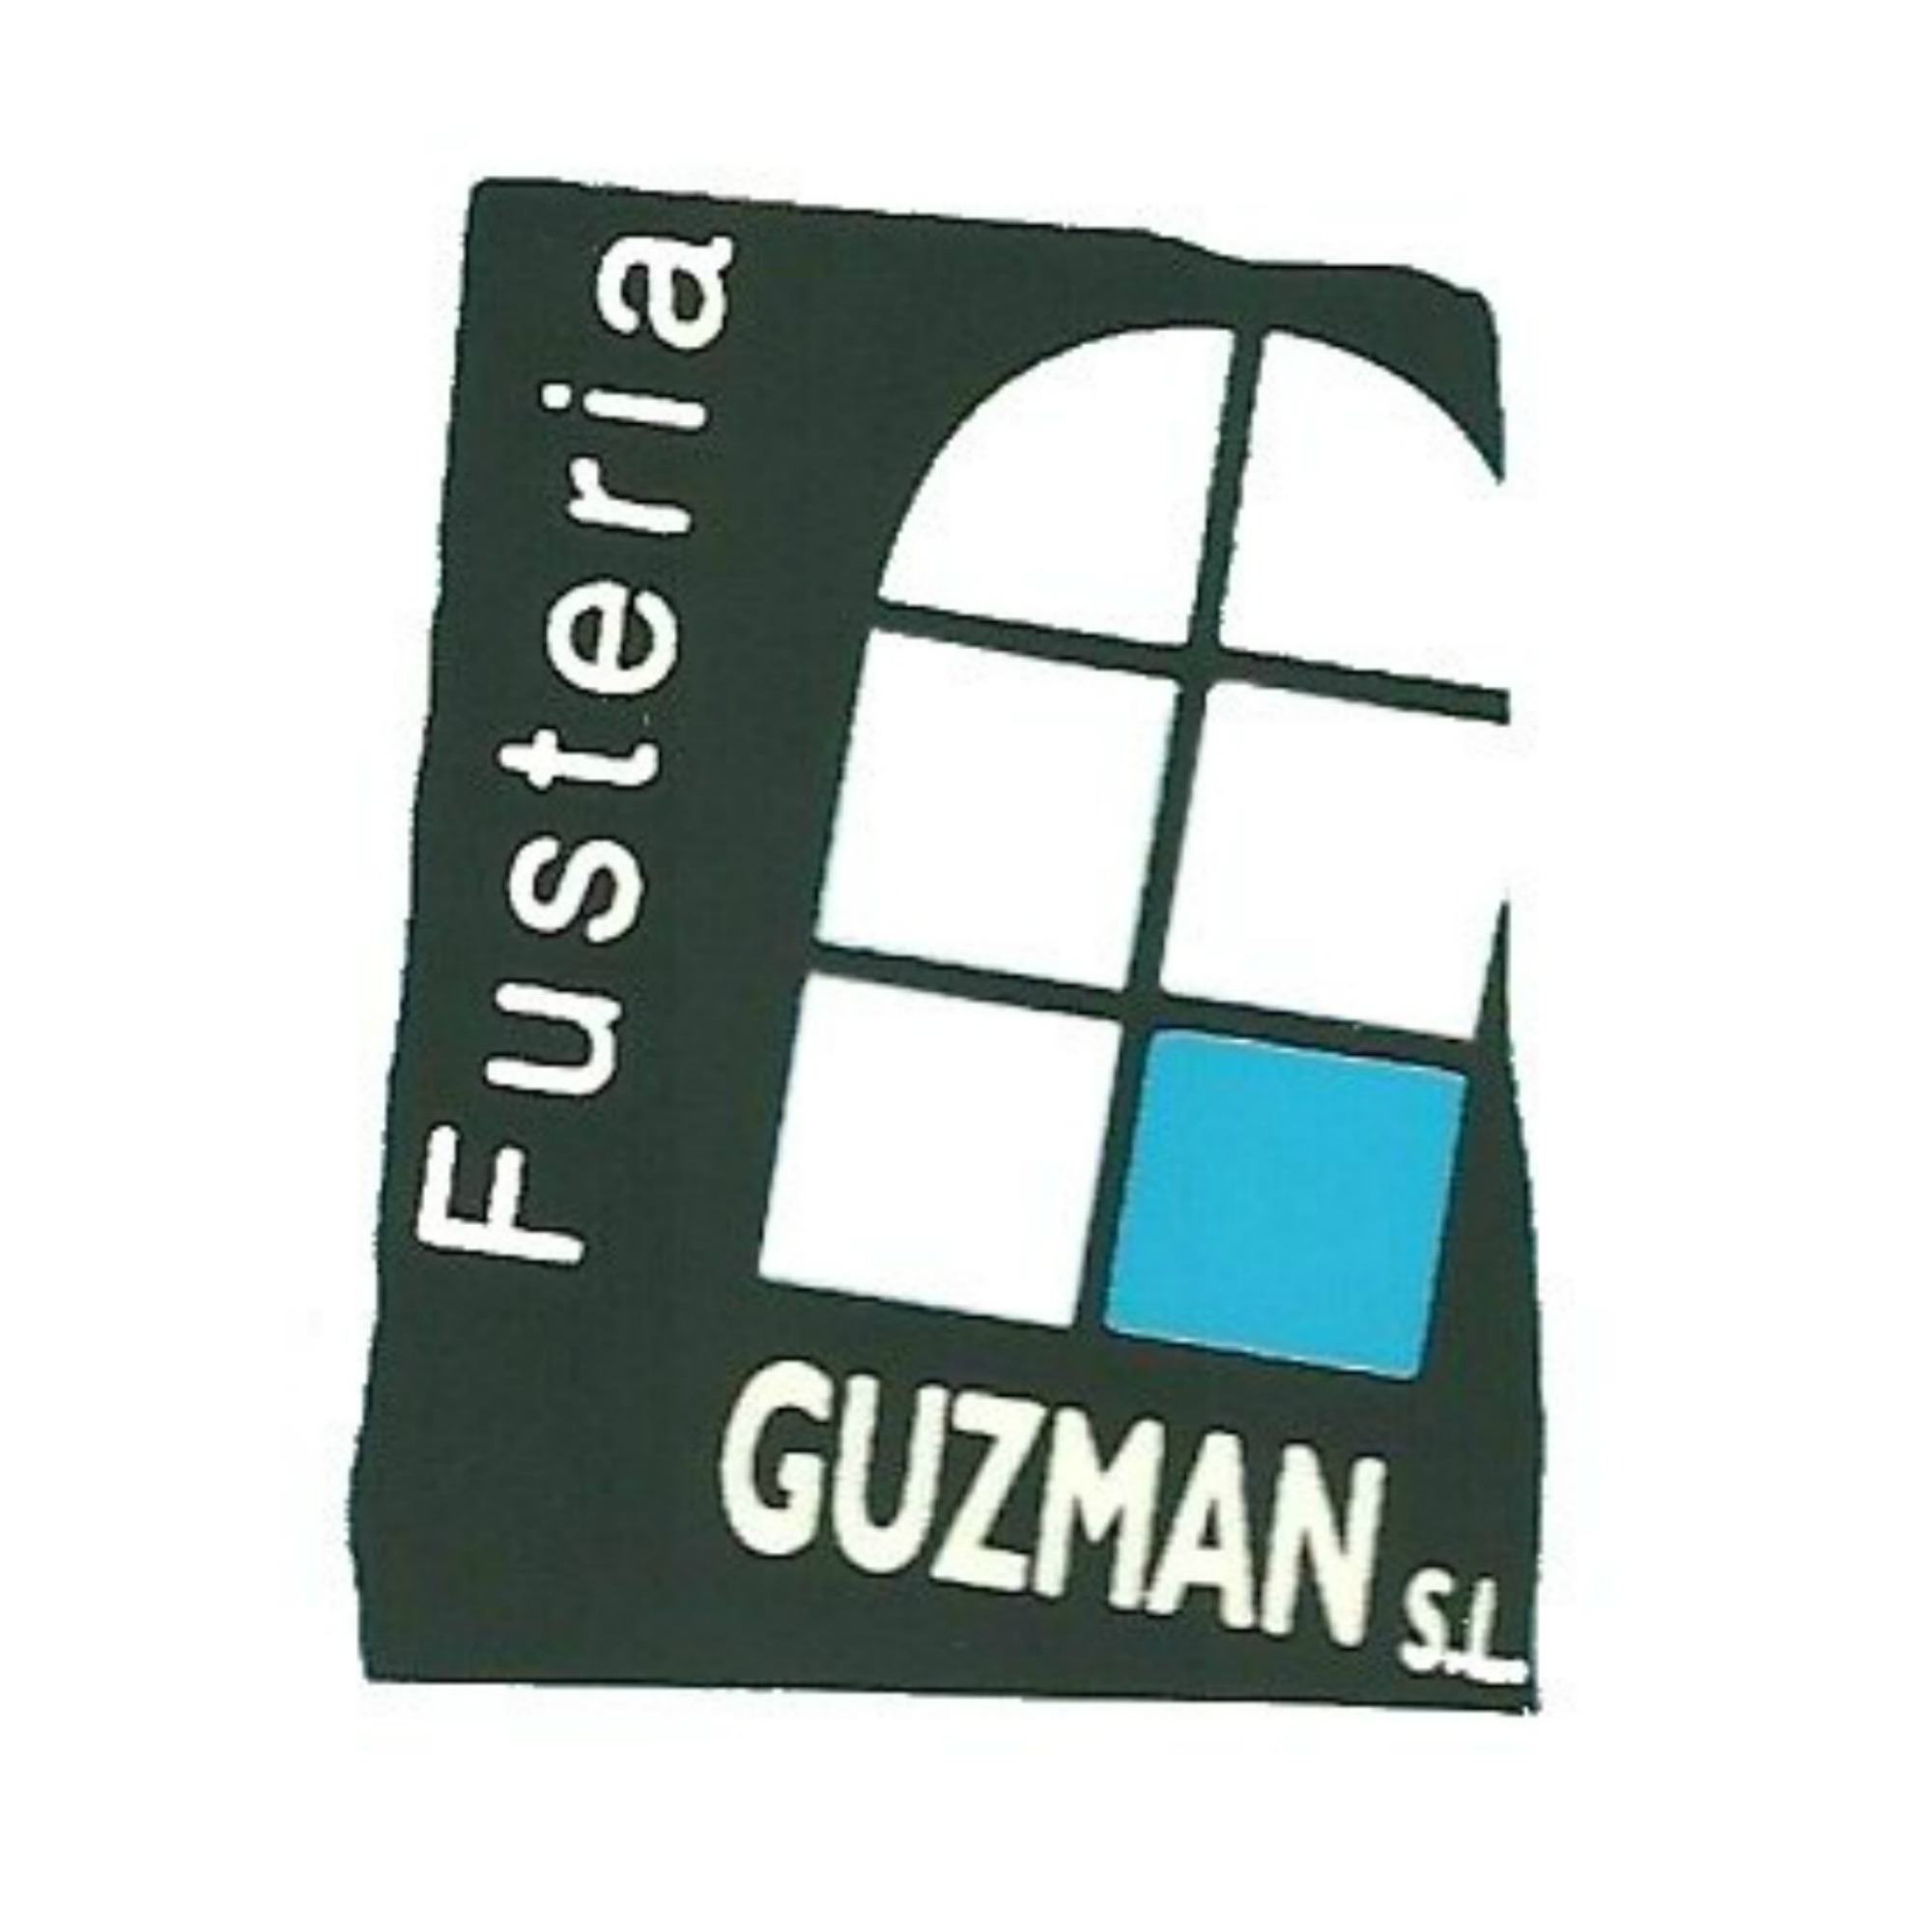 Fusteria Guzman, SL